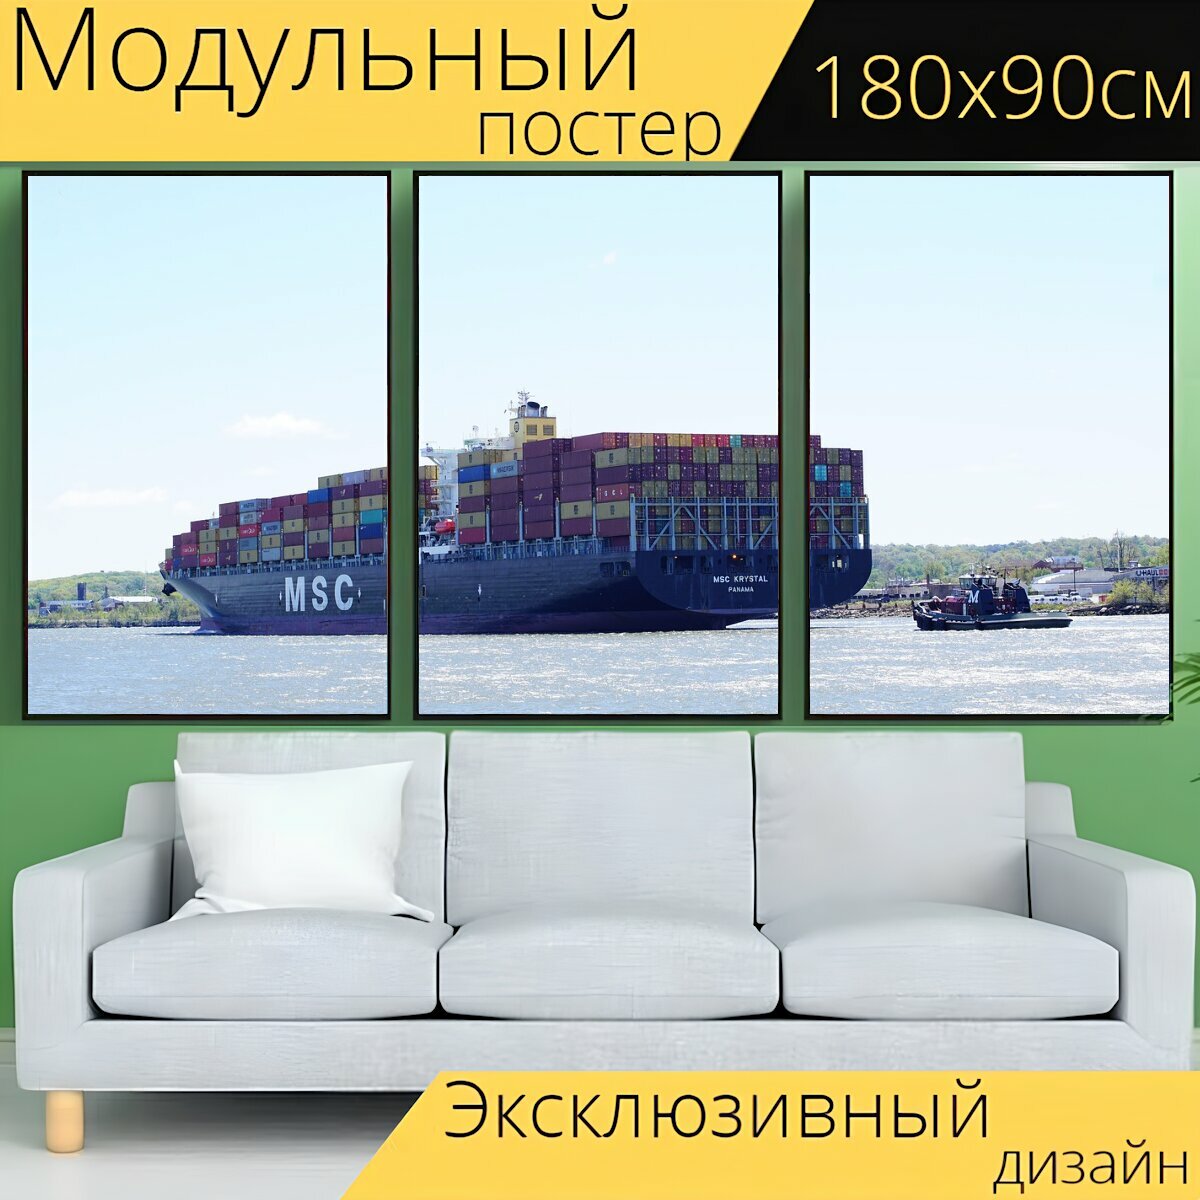 Модульный постер "Грузовое судно, контейнеровоз, контейнер" 180 x 90 см. для интерьера